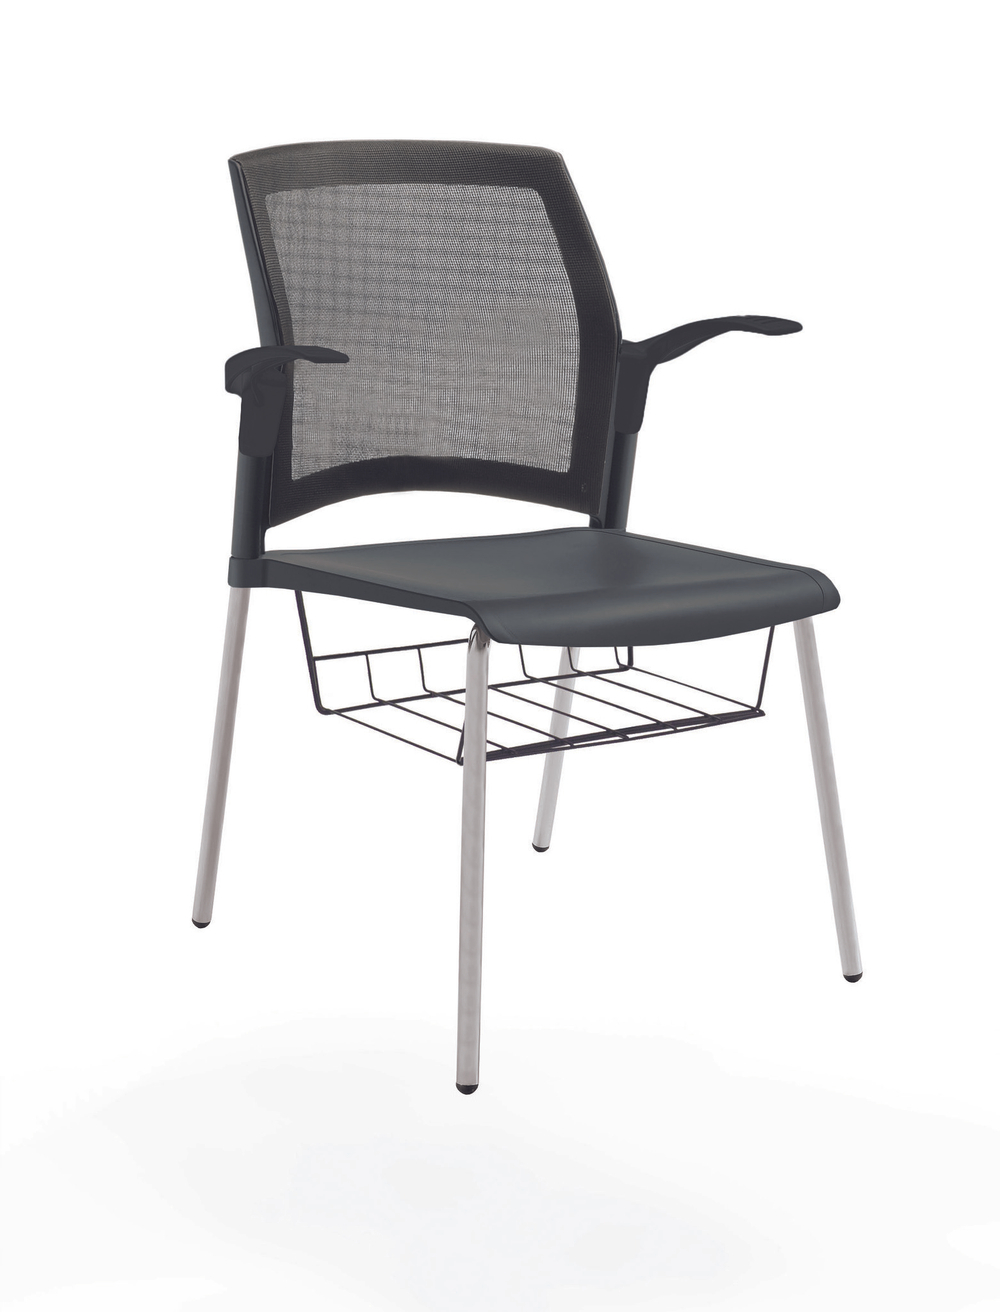 стул Rewind на 4 ногах, каркас серый, пластик черный, спинка-сетка, с открытыми подлокотниками, с подседельной корзиной